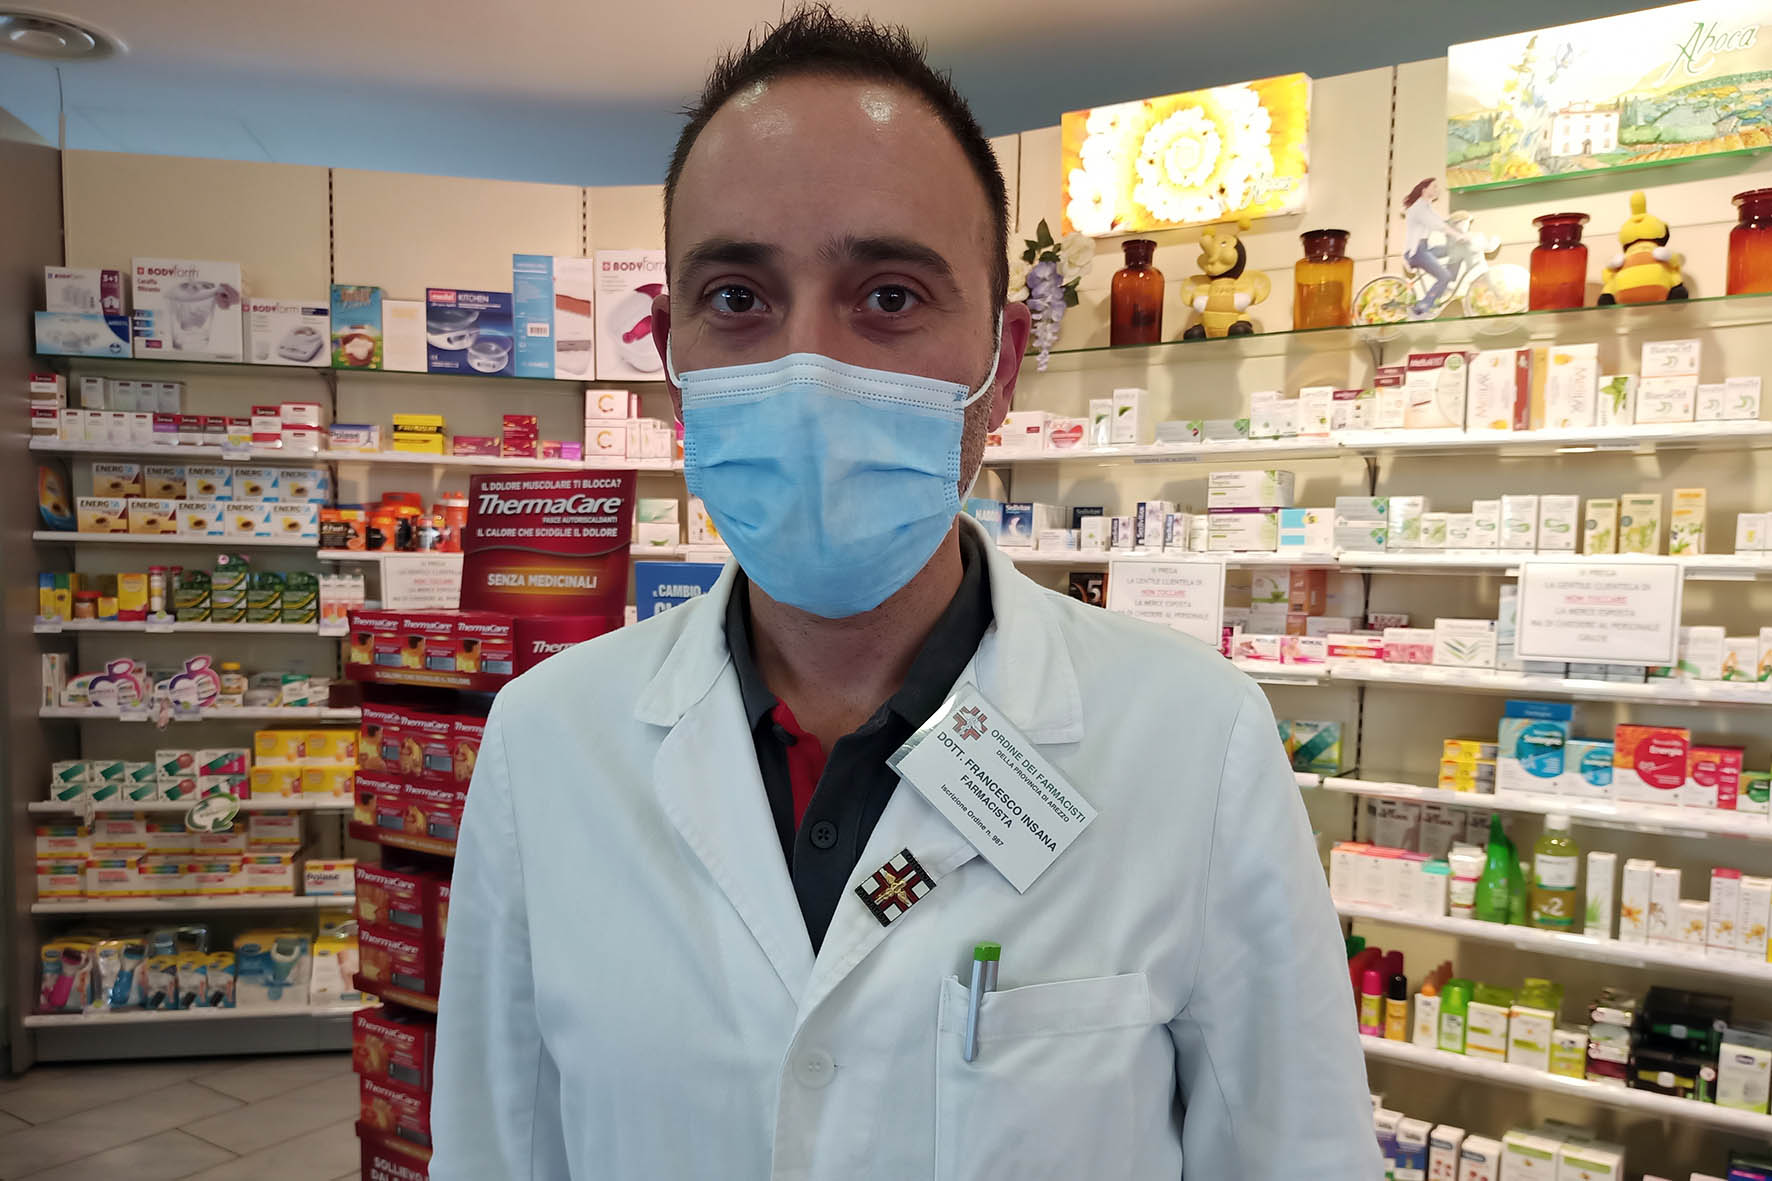 Un nuovo centro per i vaccini anti-Covid alla Farmacia Comunale “Mecenate”